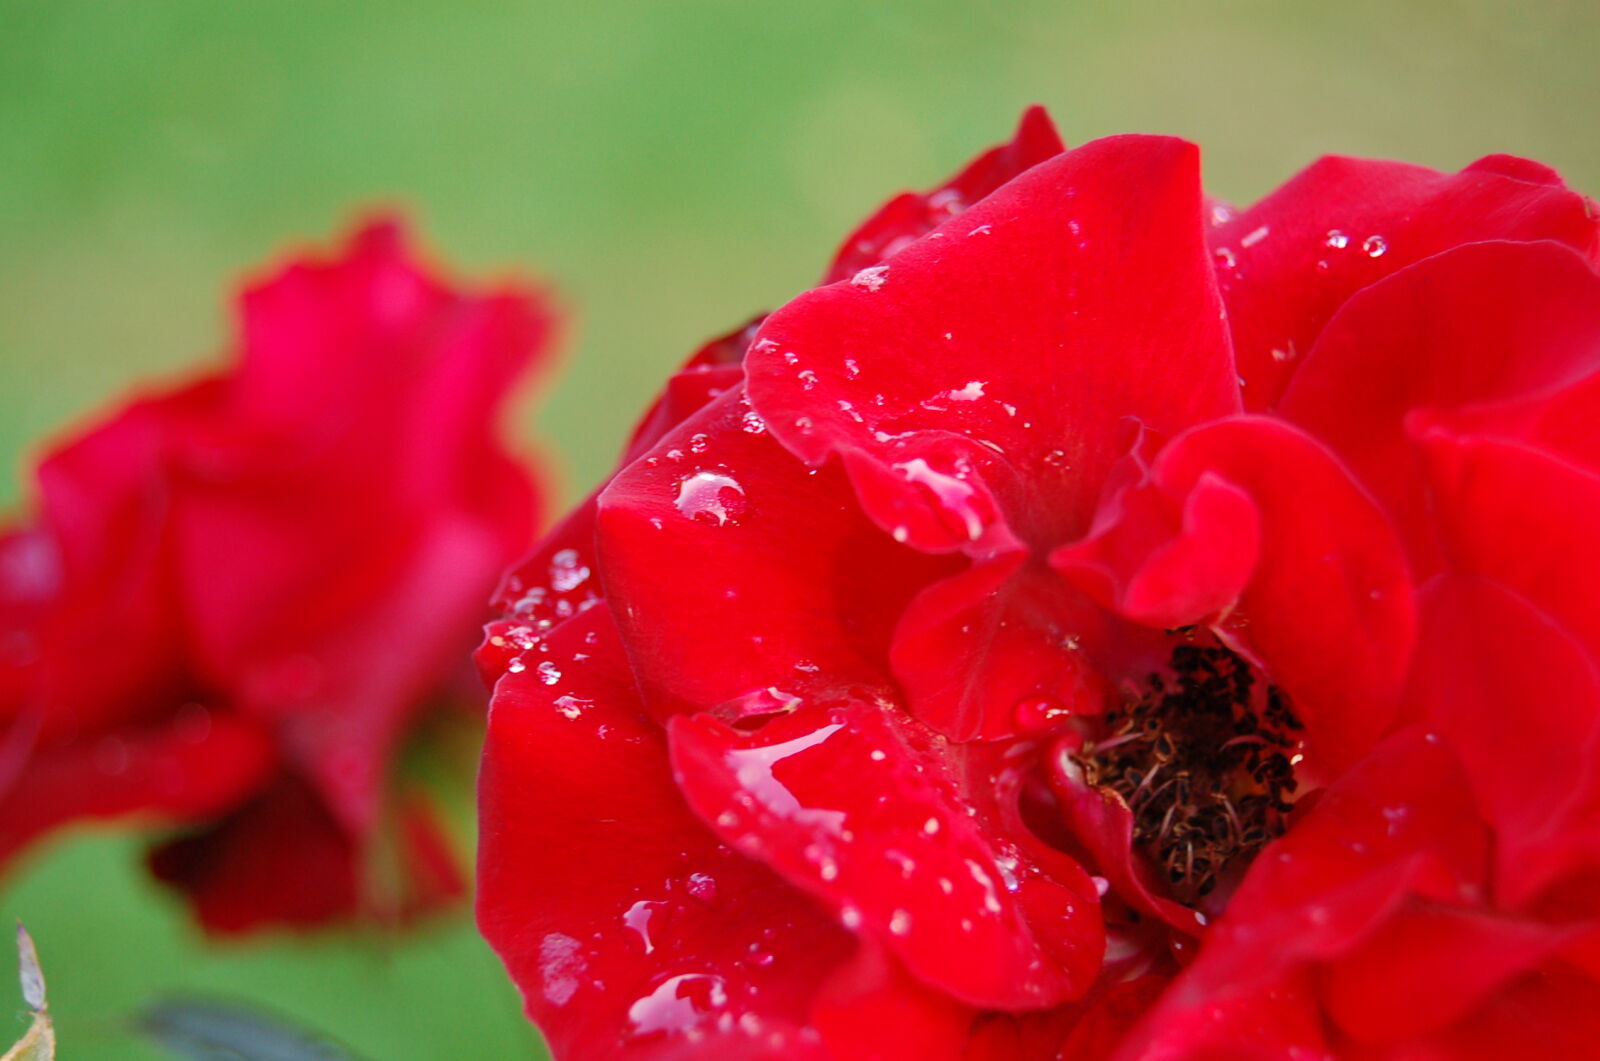 Nikon D50 + AF-S DX Zoom-Nikkor 18-55mm f/3.5-5.6G ED sample photo. Drops, flower, red, rose photography